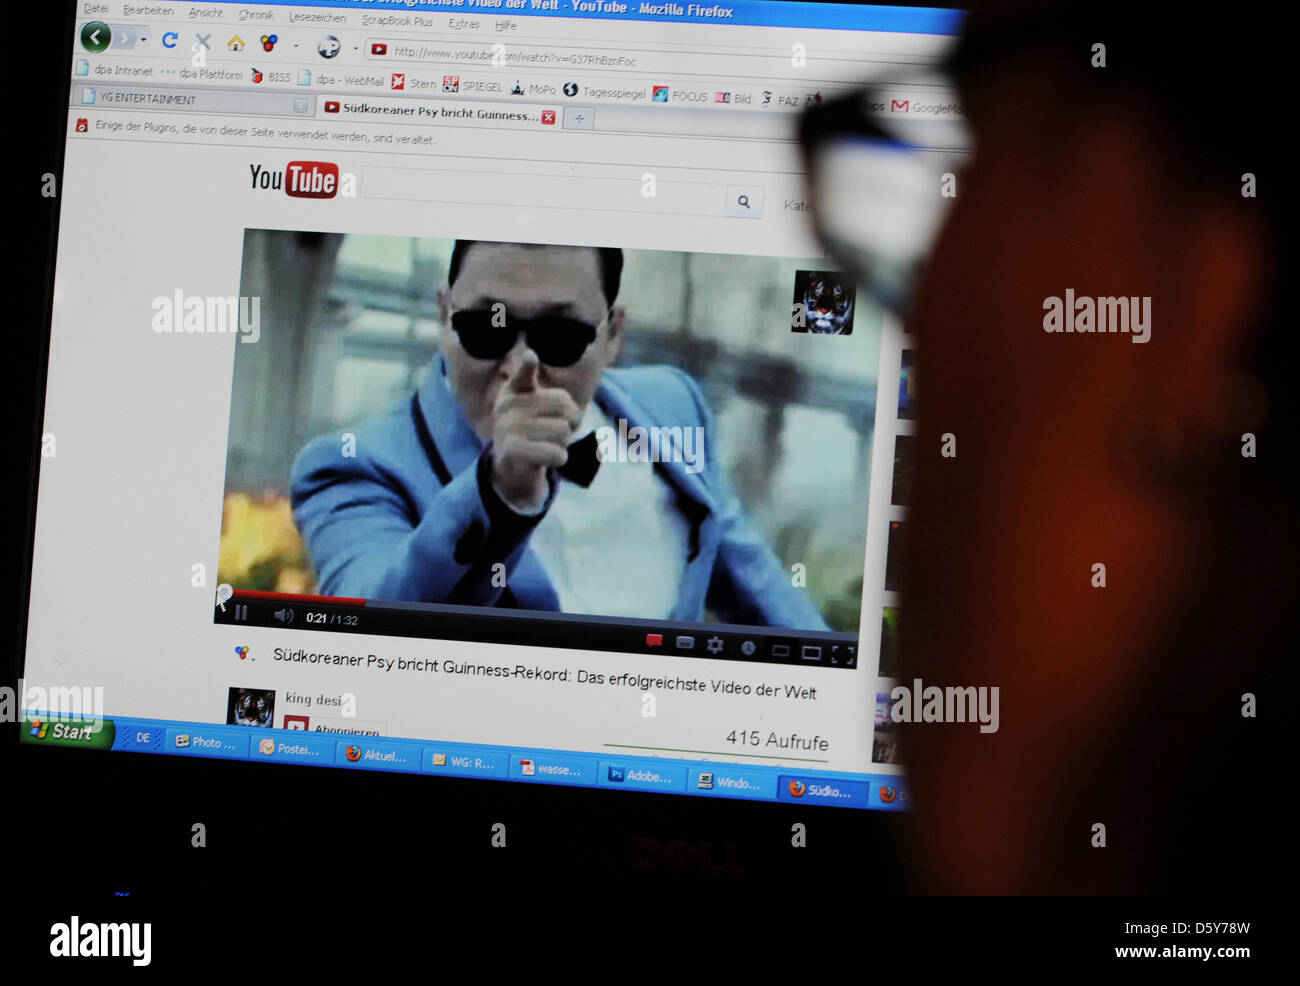 Una donna guarda una schermata con un video di youtube del sud coreano rapper Psy a Berlino, Germania, 14 ottobre 2012. Psy della hit 'Gangnam stile' saliti internation billboard grafici. Essa è il maggior successo di youtube video nella storia. Foto: Jens Kalaene Foto Stock